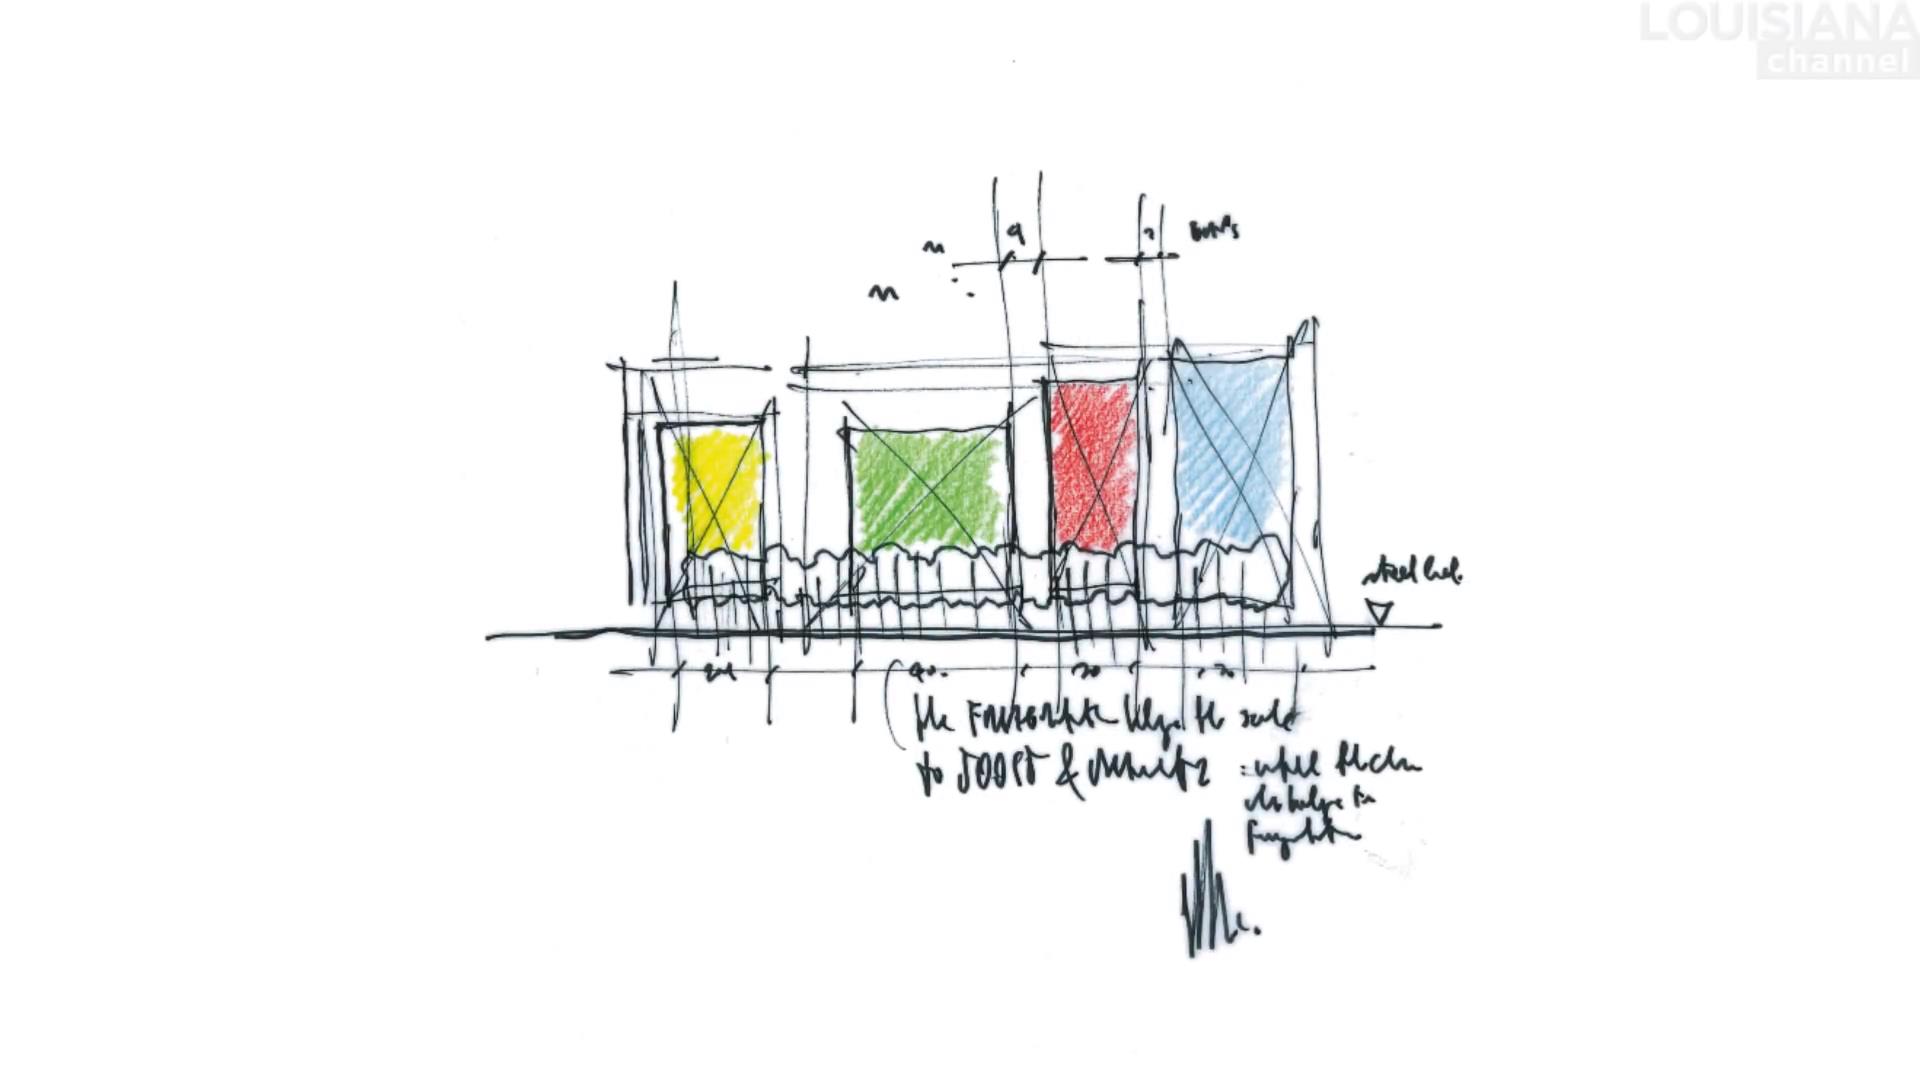 伦佐·皮亚诺,Renzo Piano,伦佐·皮亚诺作品,建筑大师视频,伦佐·皮亚诺访谈,普利兹克奖建筑大师,蓬皮杜艺术中心,日本关西国际机场,提巴欧文化中心,波茨坦广场改造